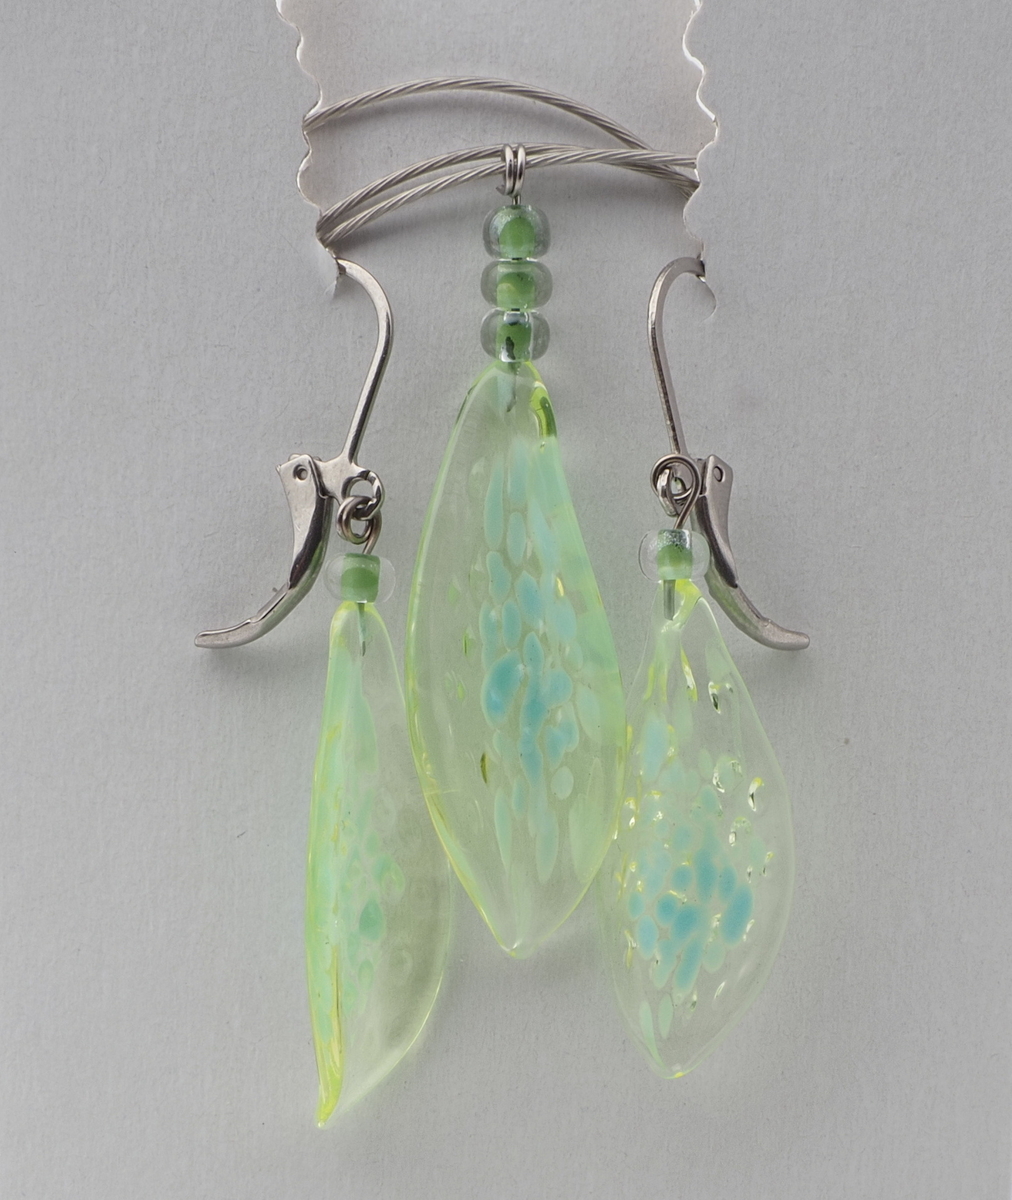 Czech lampwork uranium green leaf glass bead necklace earring set